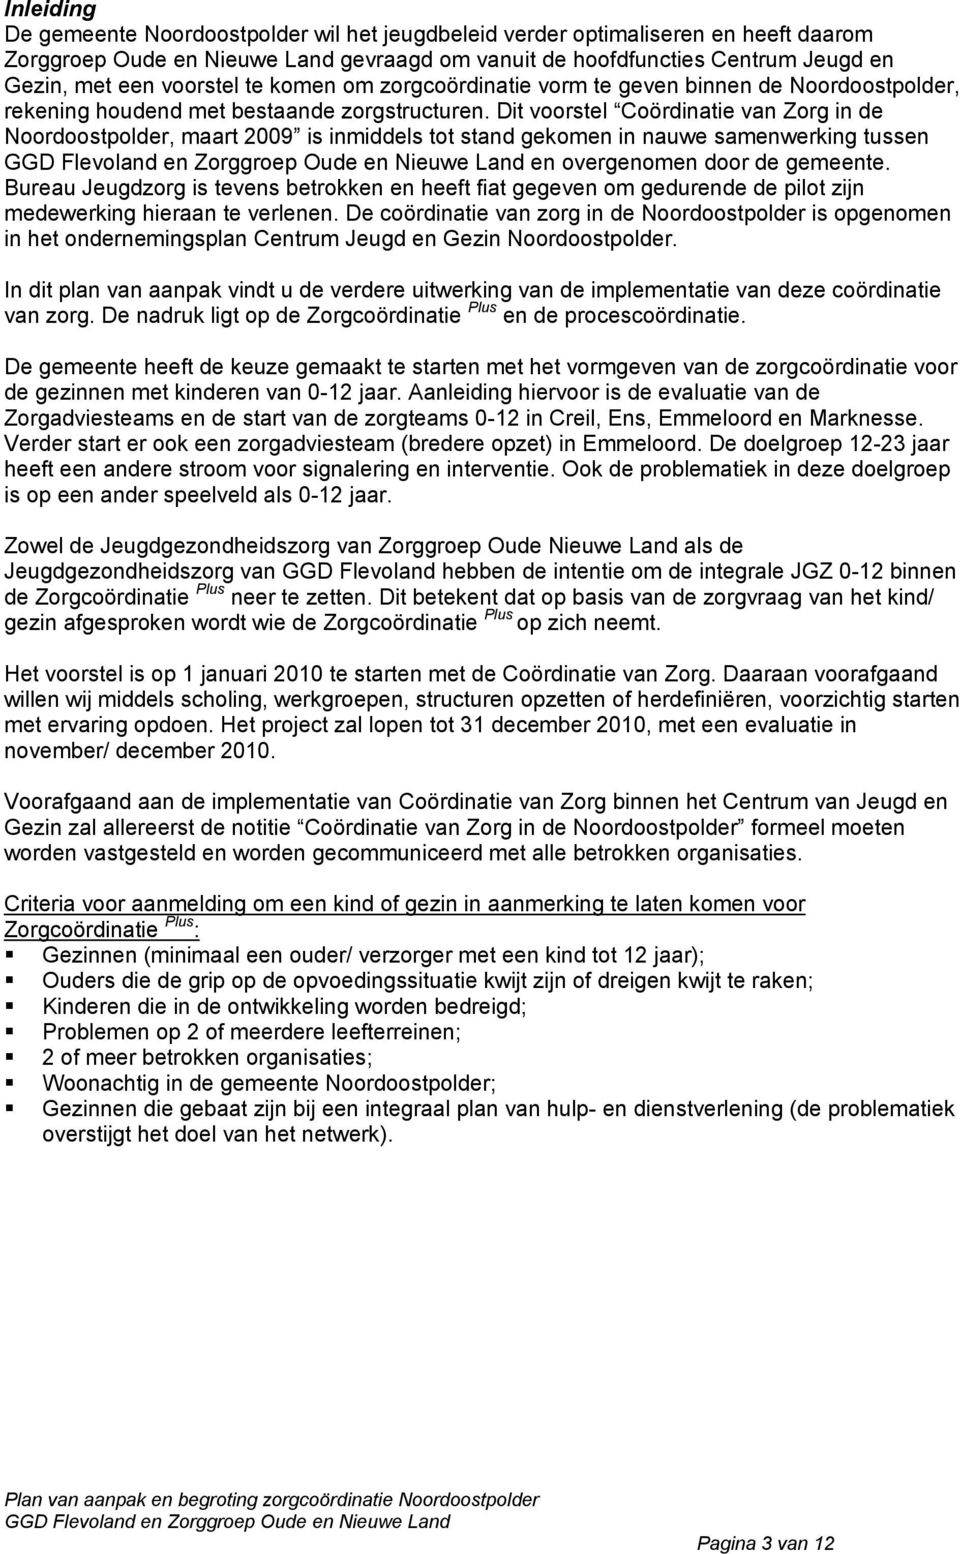 Dit voorstel Coördinatie van Zorg in de Noordoostpolder, maart is inmiddels tot stand gekomen in nauwe samenwerking tussen en overgenomen door de gemeente.